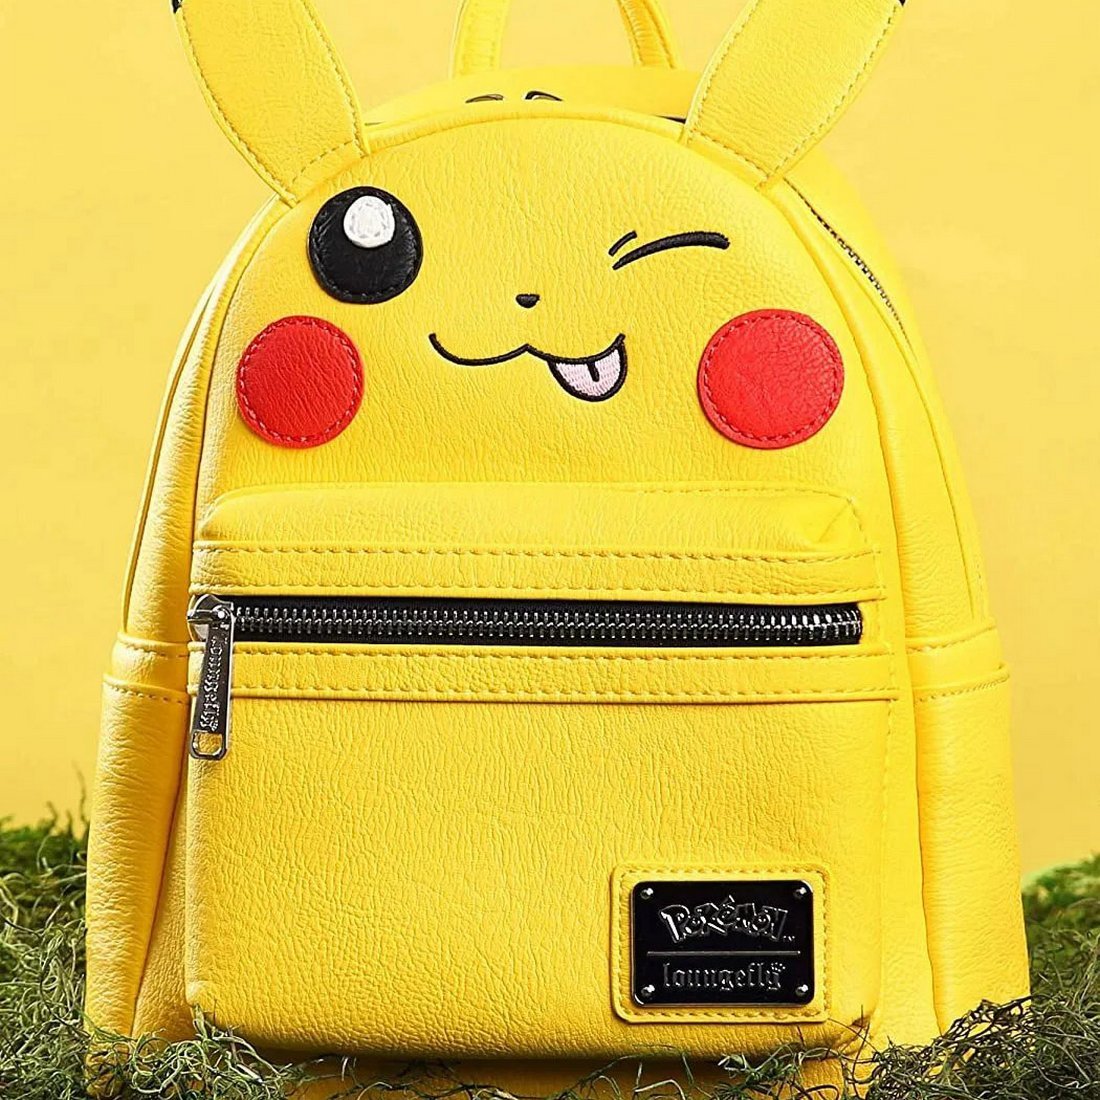 Pikachu Wink Cosplay